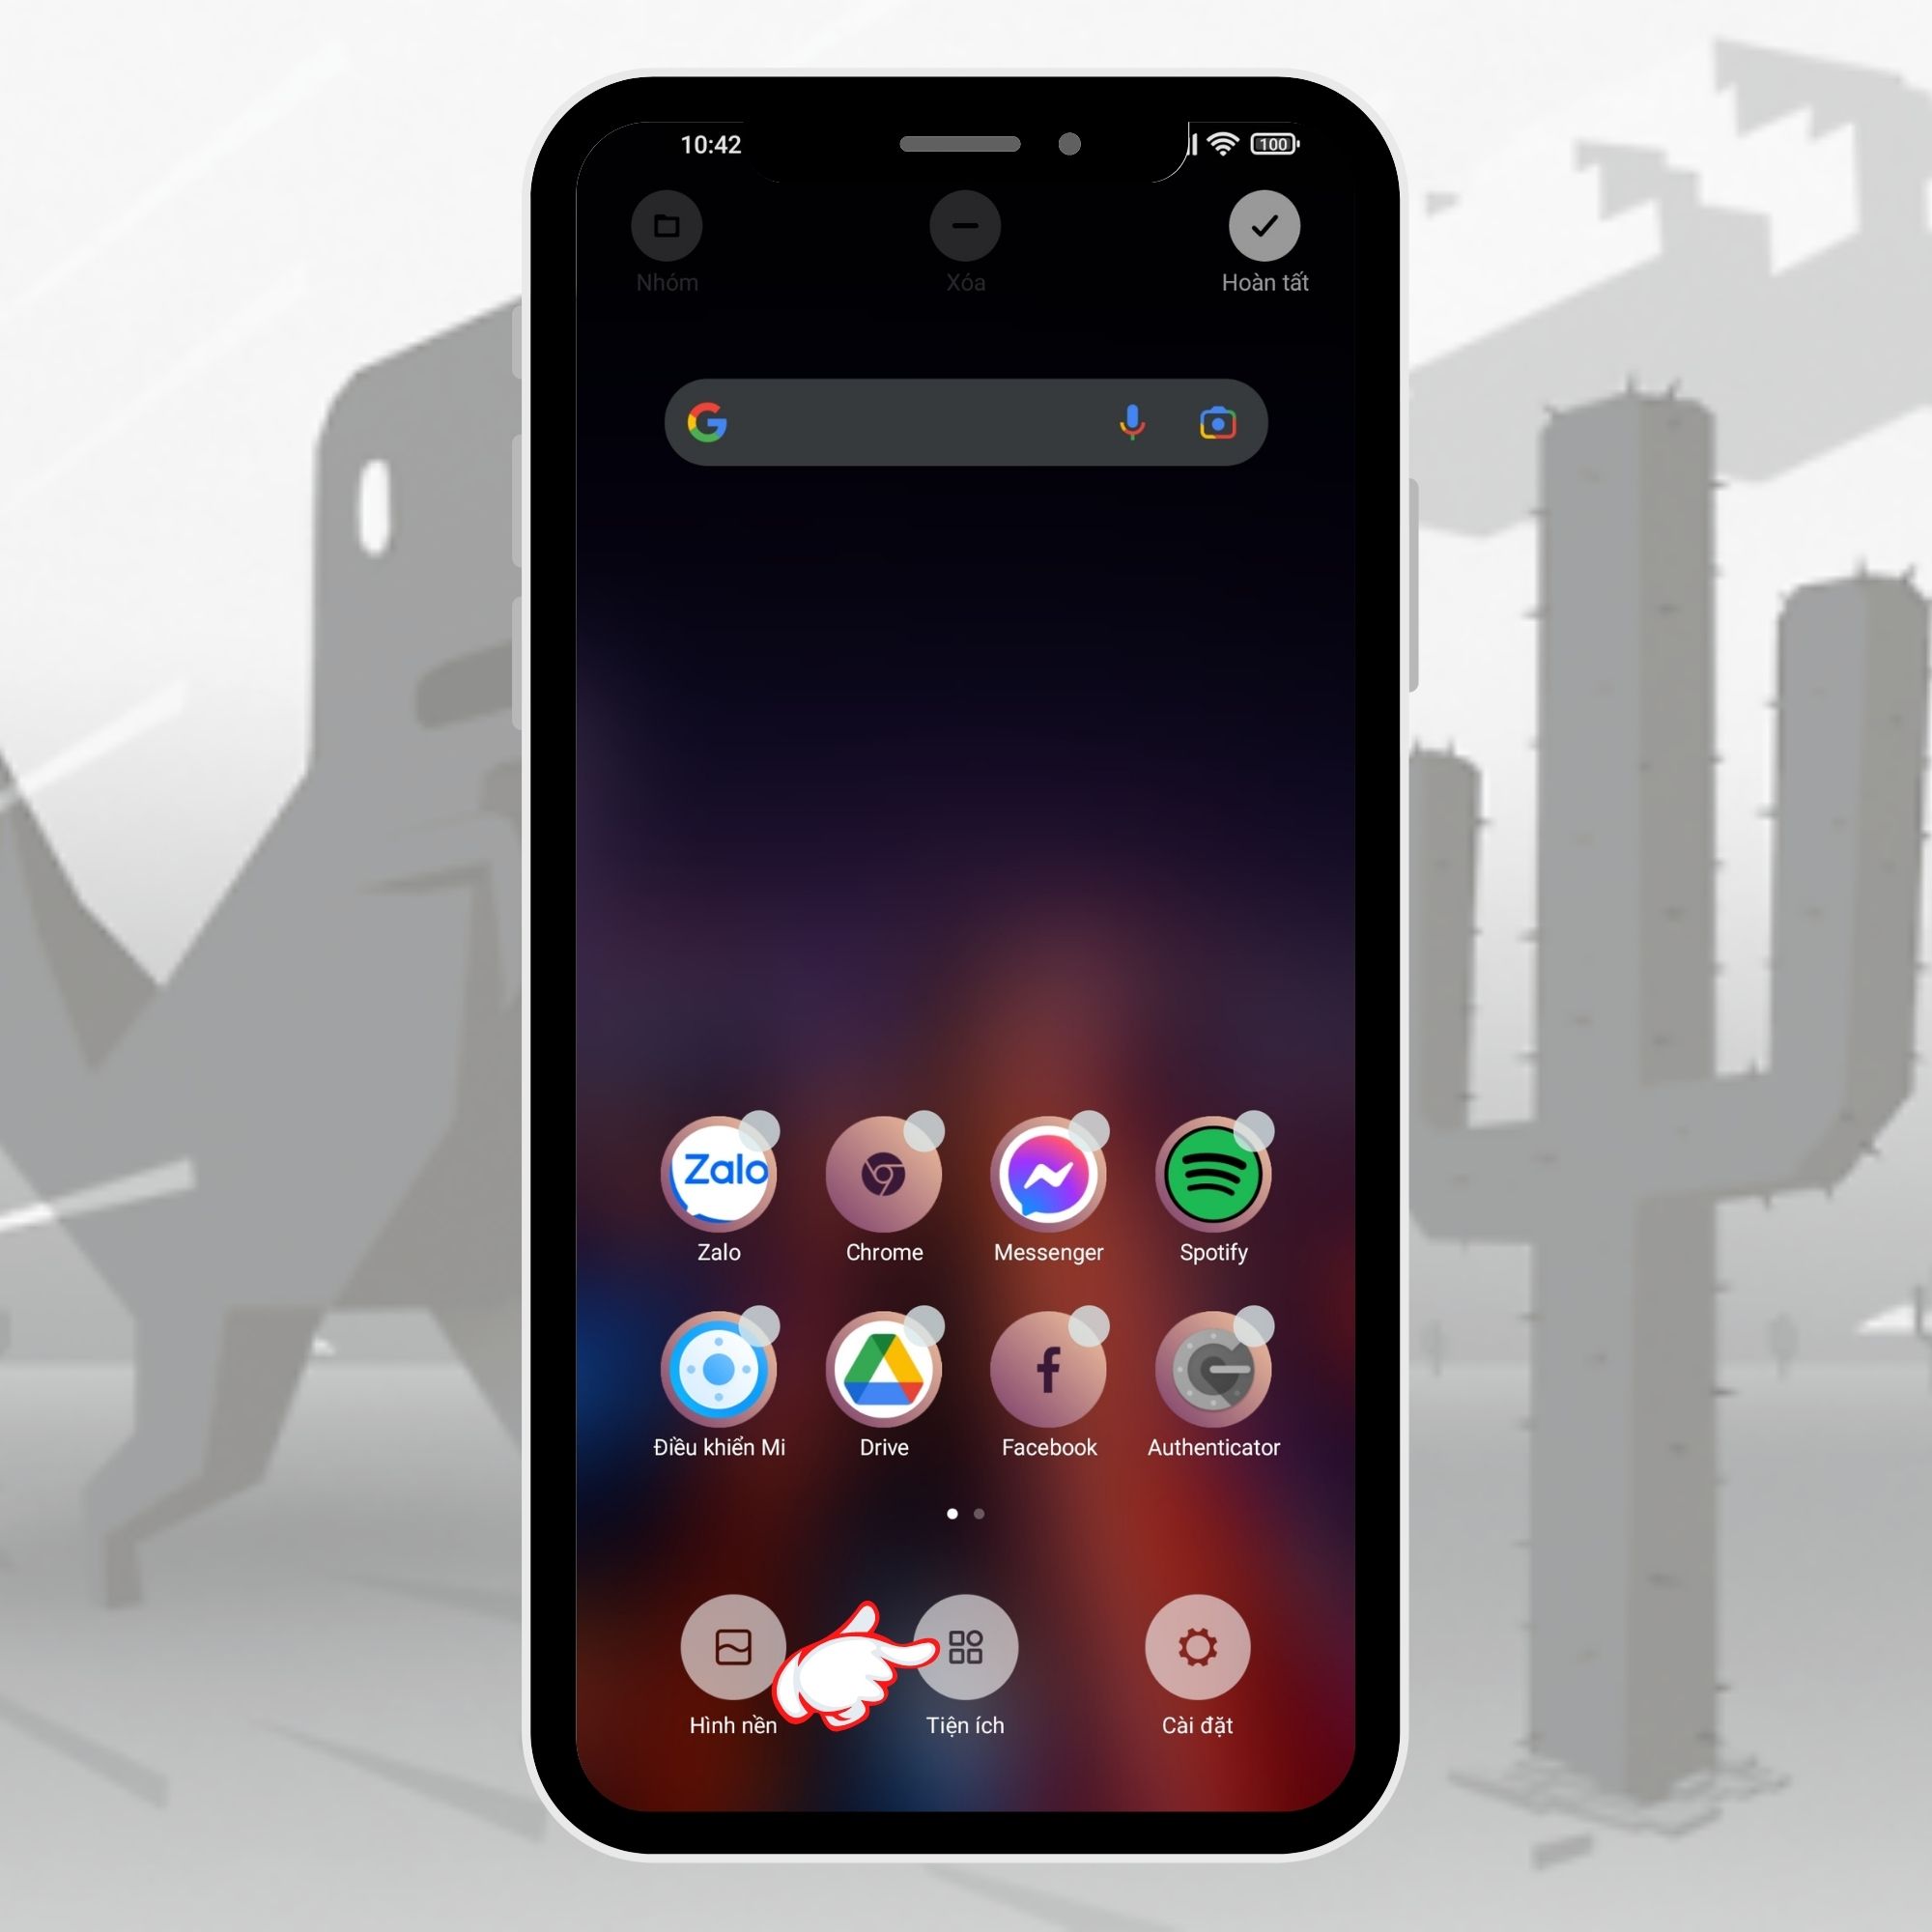 Vuakiemhiep - Trang thông tin công nghệ mới nhất 4-36 Mang widget của tựa game khủng long "huyền thoại" lên màn hình Android cực đơn giản 